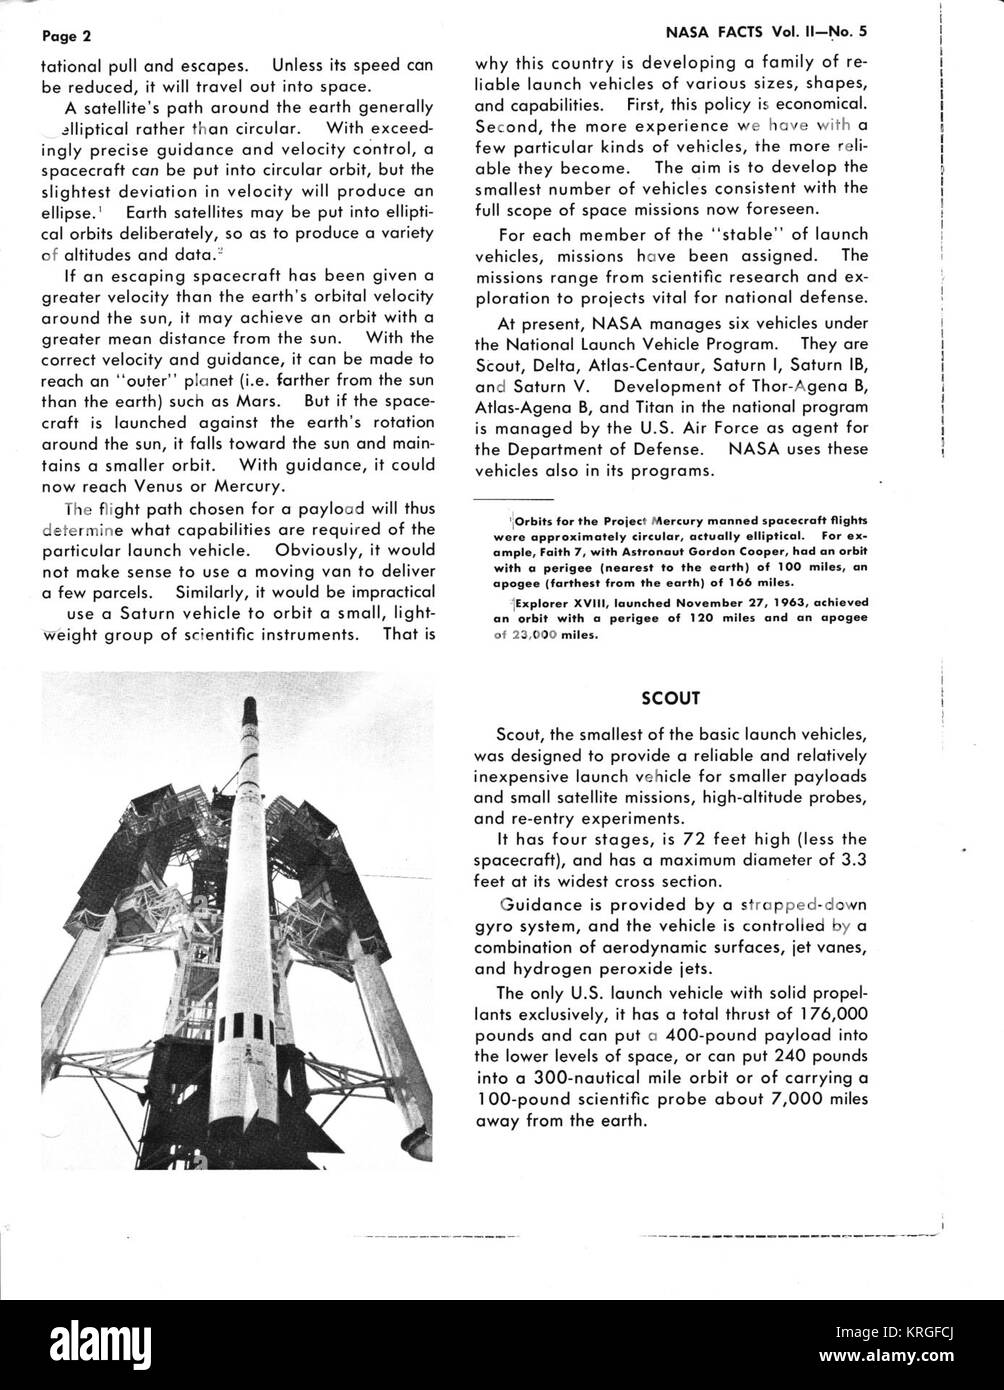 La NASA FATTI Volume II NUMERO 5 i veicoli di lancio pagina 02 Foto Stock